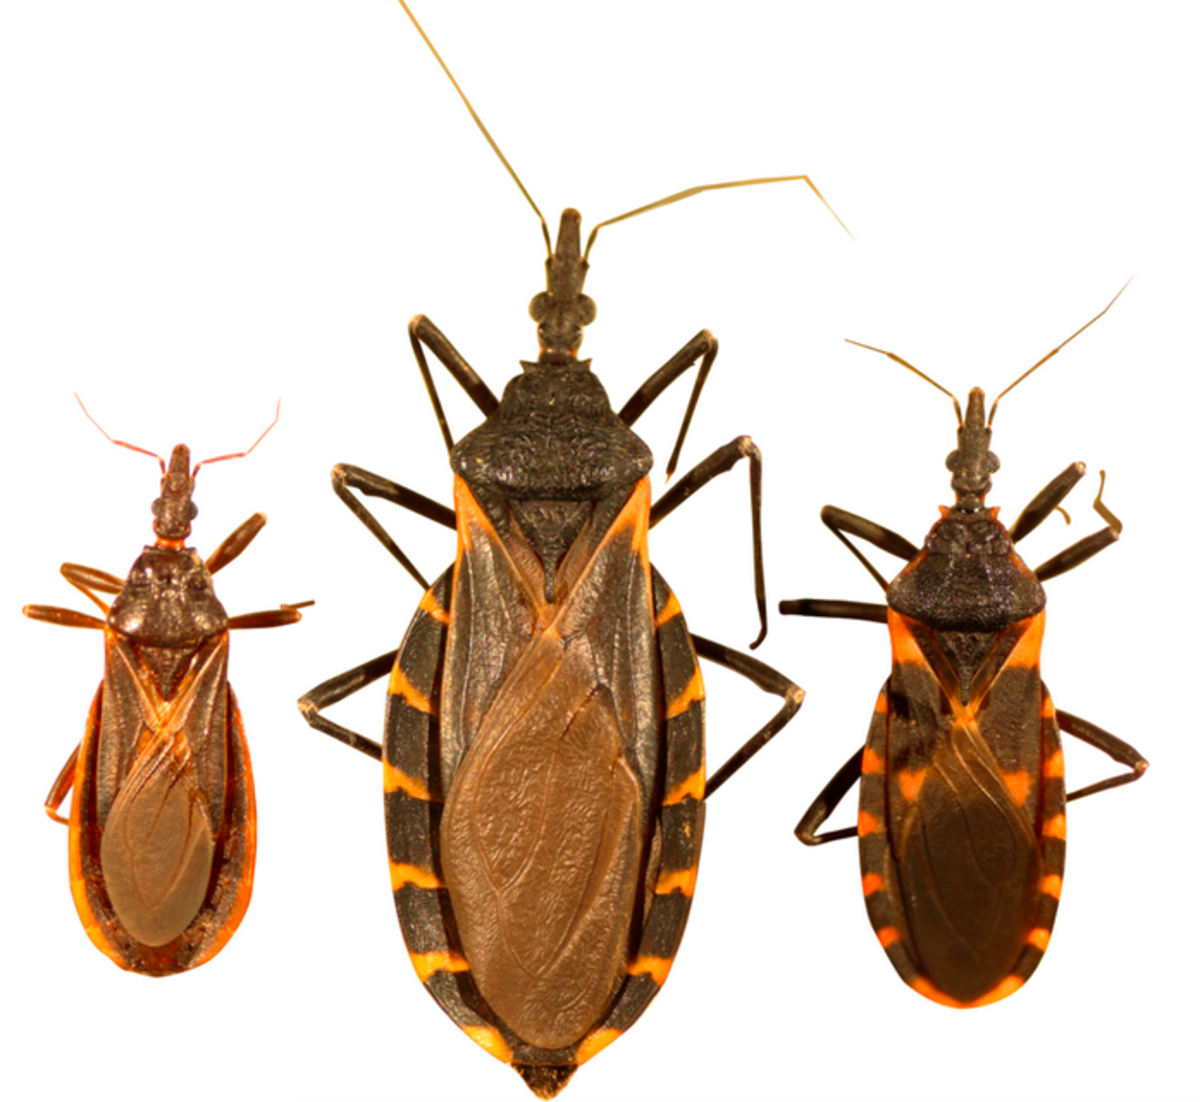 Three kinds of kissing bug